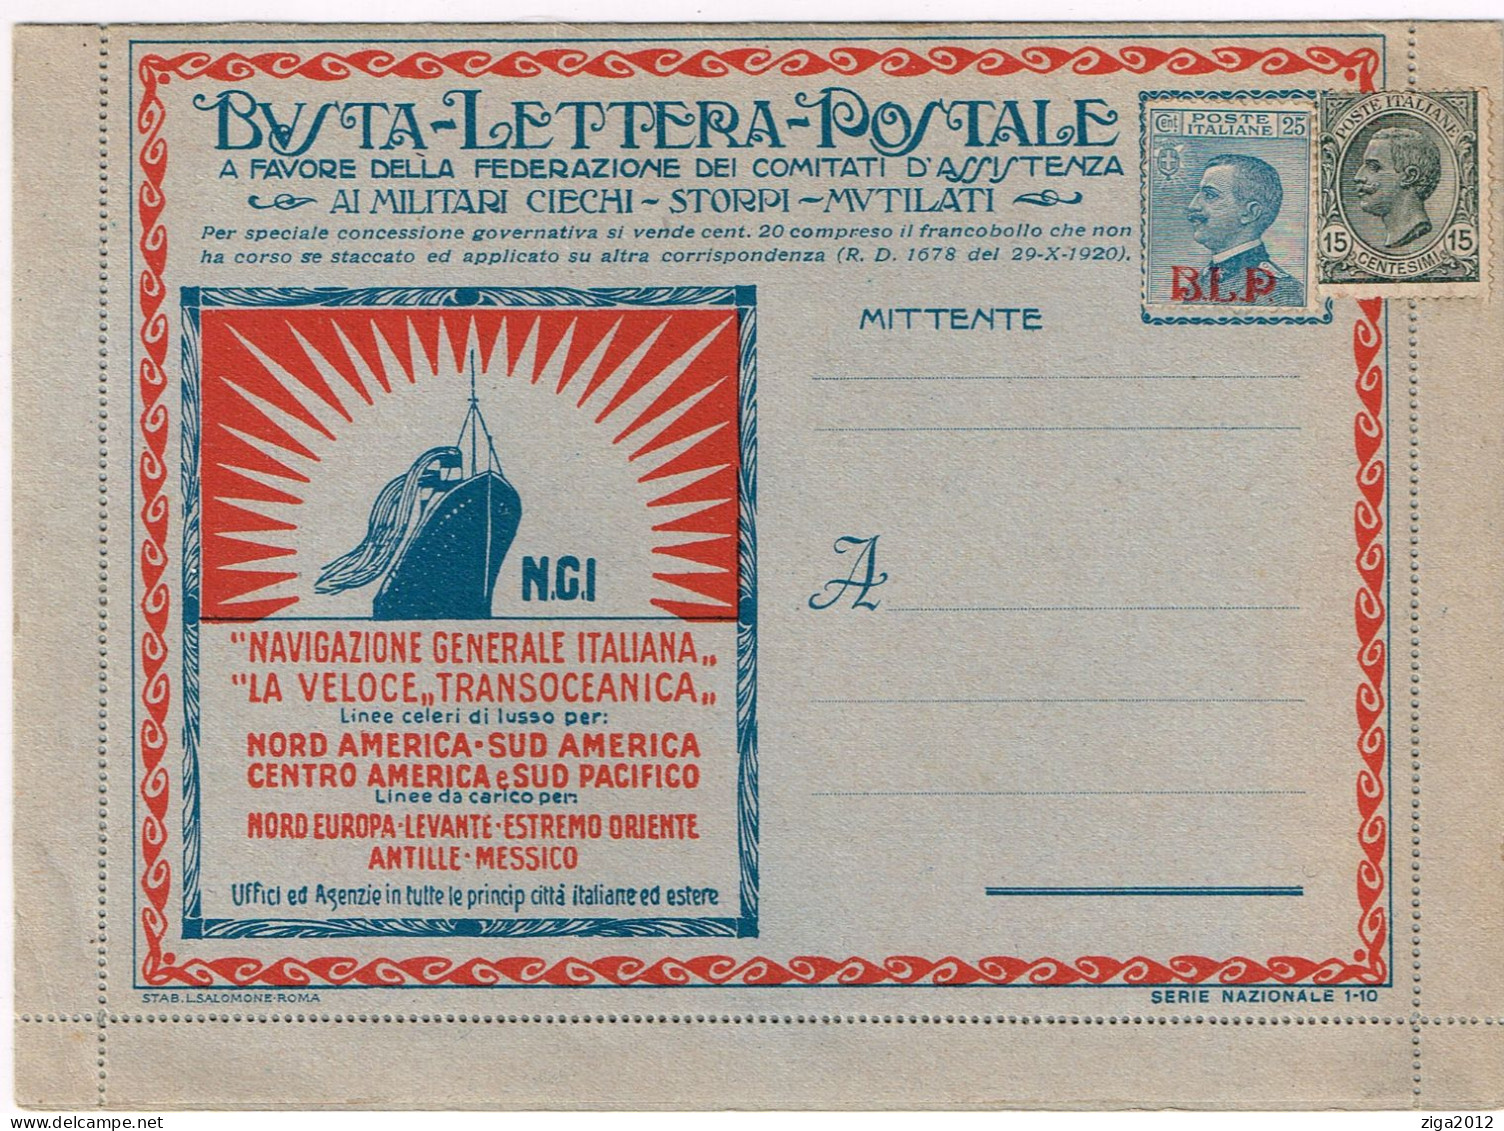 ITALY 1921 B.L.P. BUSTA LETTERA POSTALE CON C.25 I° TIPO NUOVA E COMPLETA - Publicité